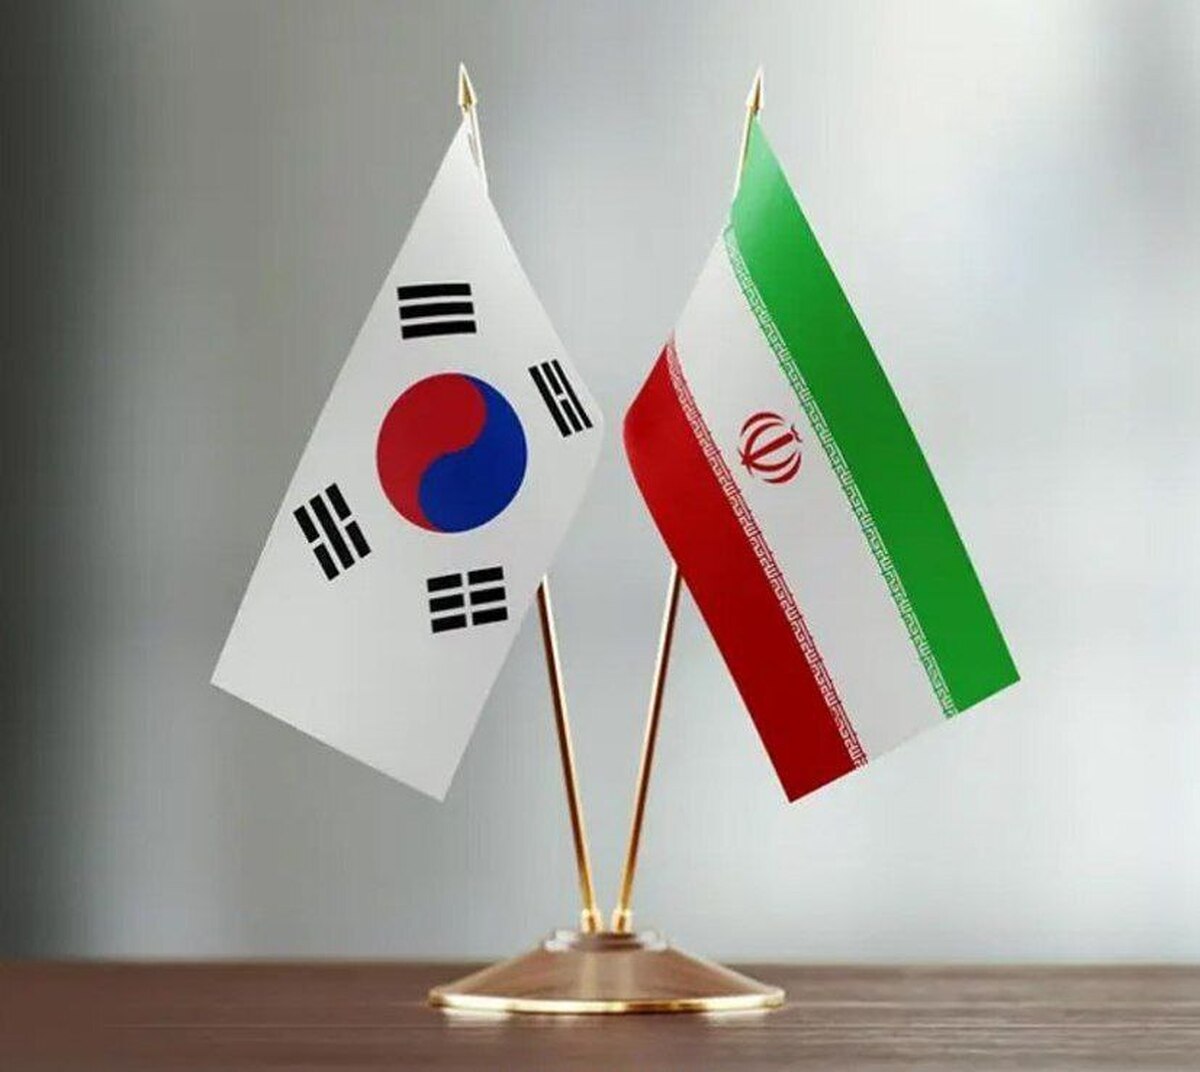 سئول: امیدوار به بهبود روابط با ایران هستیم